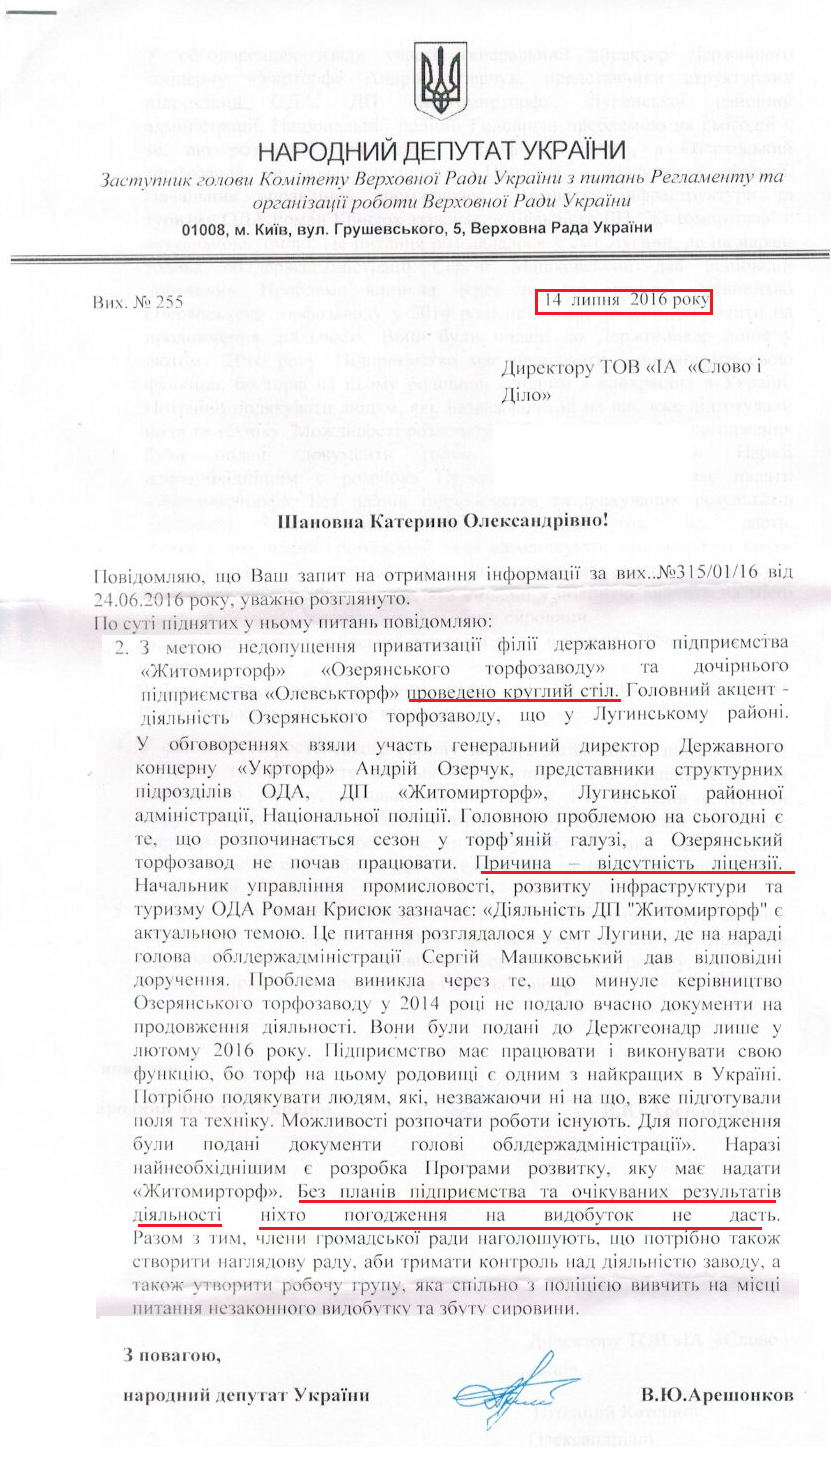  Лист народного депутата Володимира Арешонкова №255 від 14 липня 2016 року